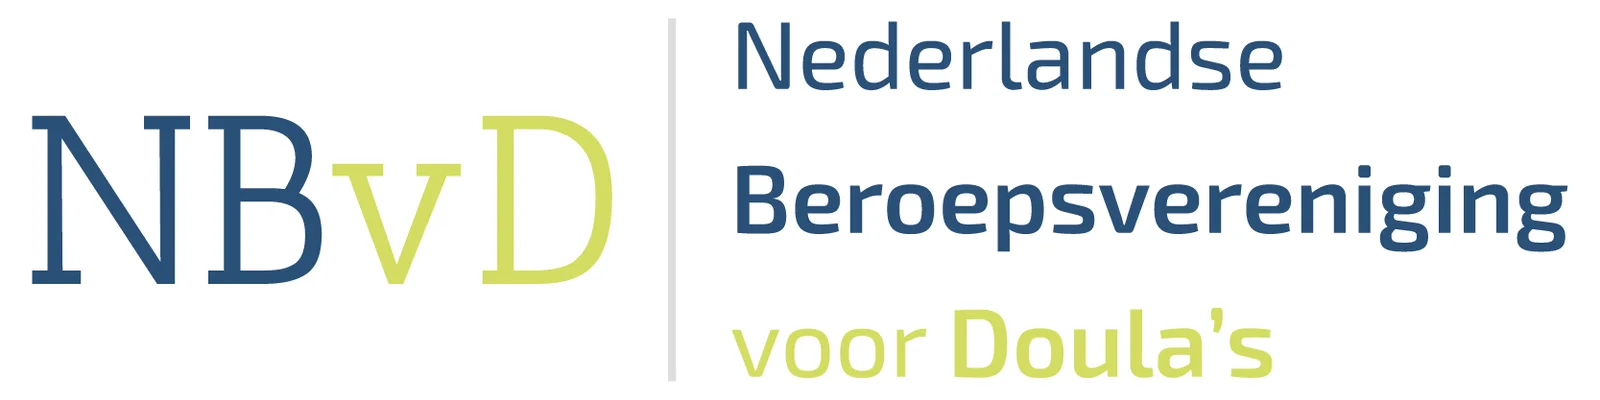 NBvD logo nieuw